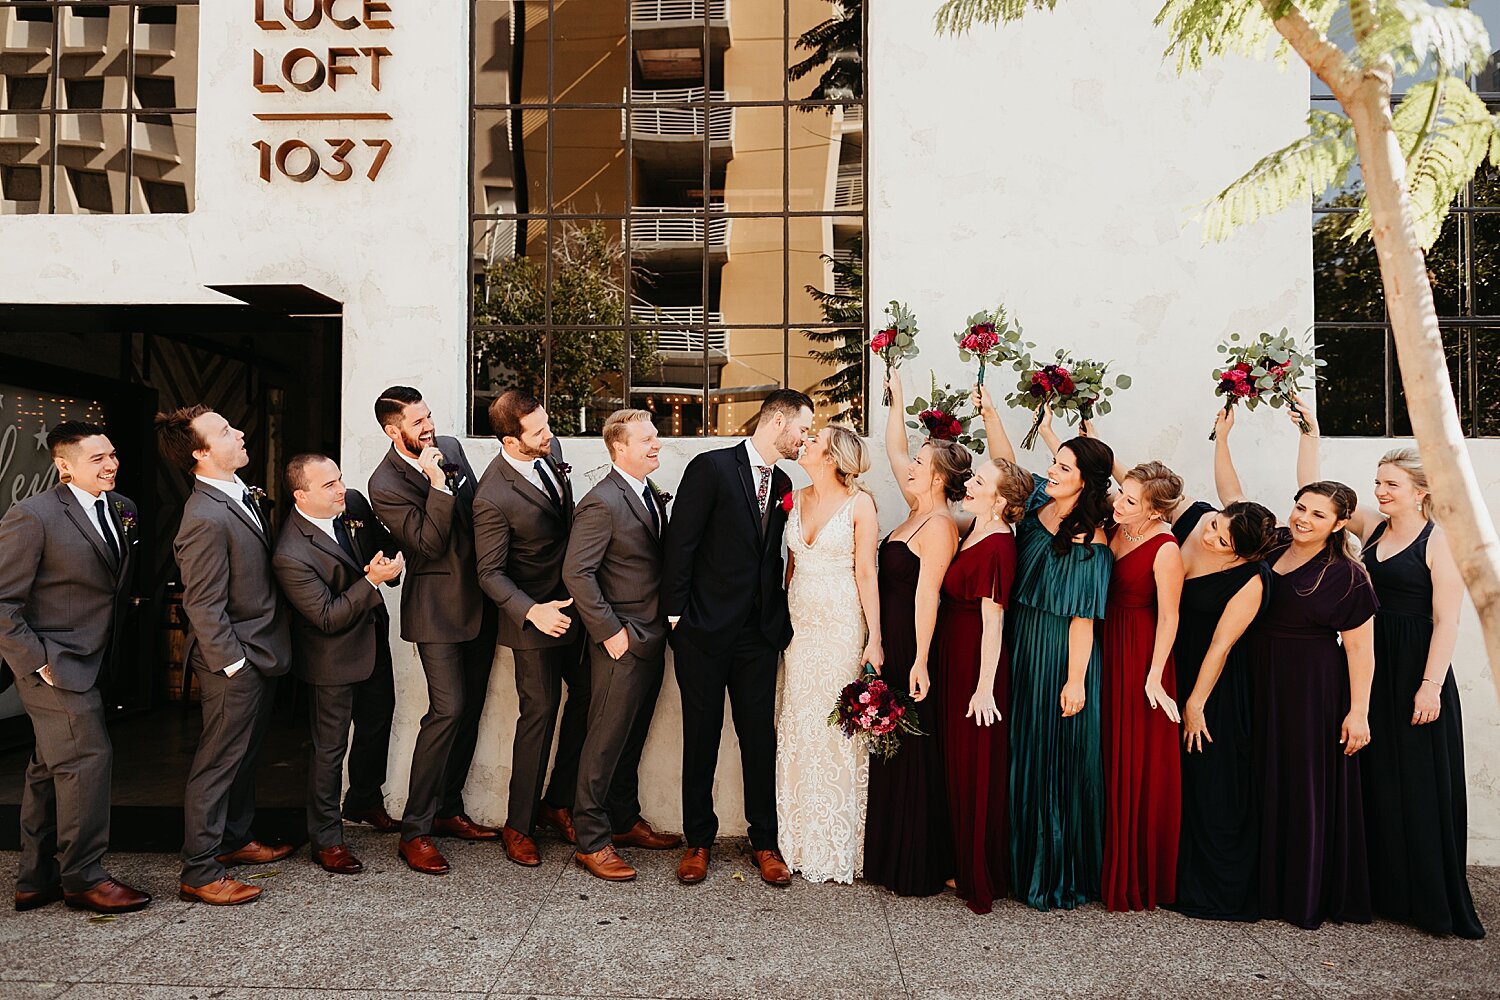 Luce-Loft-San-Diego-Wedding-40.jpg